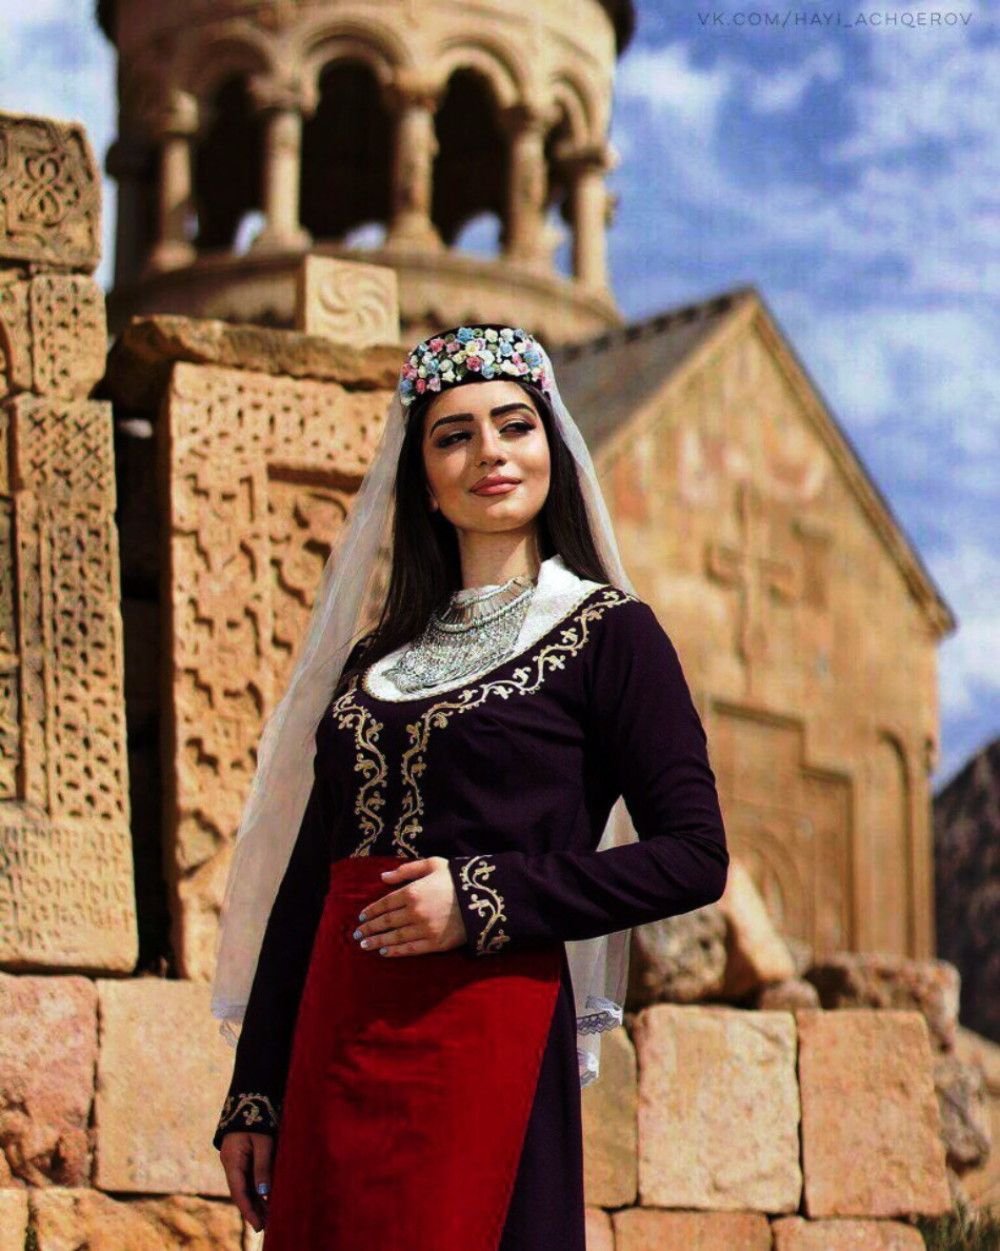 Одежда в ереване. Армянский национальный костюм Сирушо. Армянка в национальном костюме. Армянская одежда женская. Армянская девушка в национальном костюме.